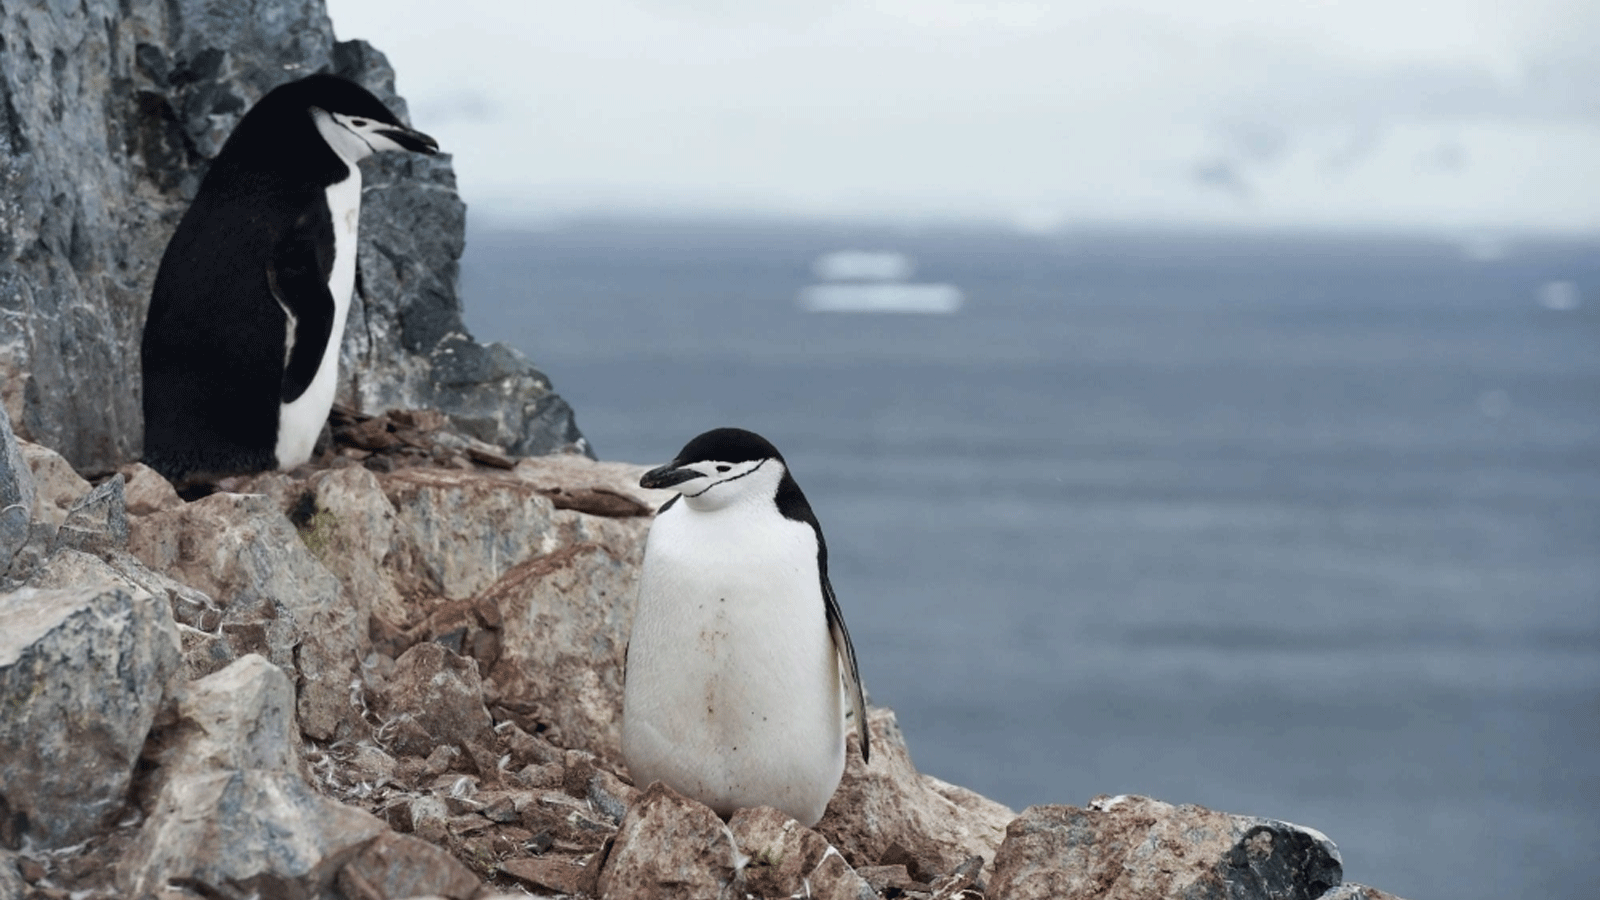 طيور البطريق تشينستراب بميناء أورني في شبه الجزيرة القطبية الجنوبية الغربية